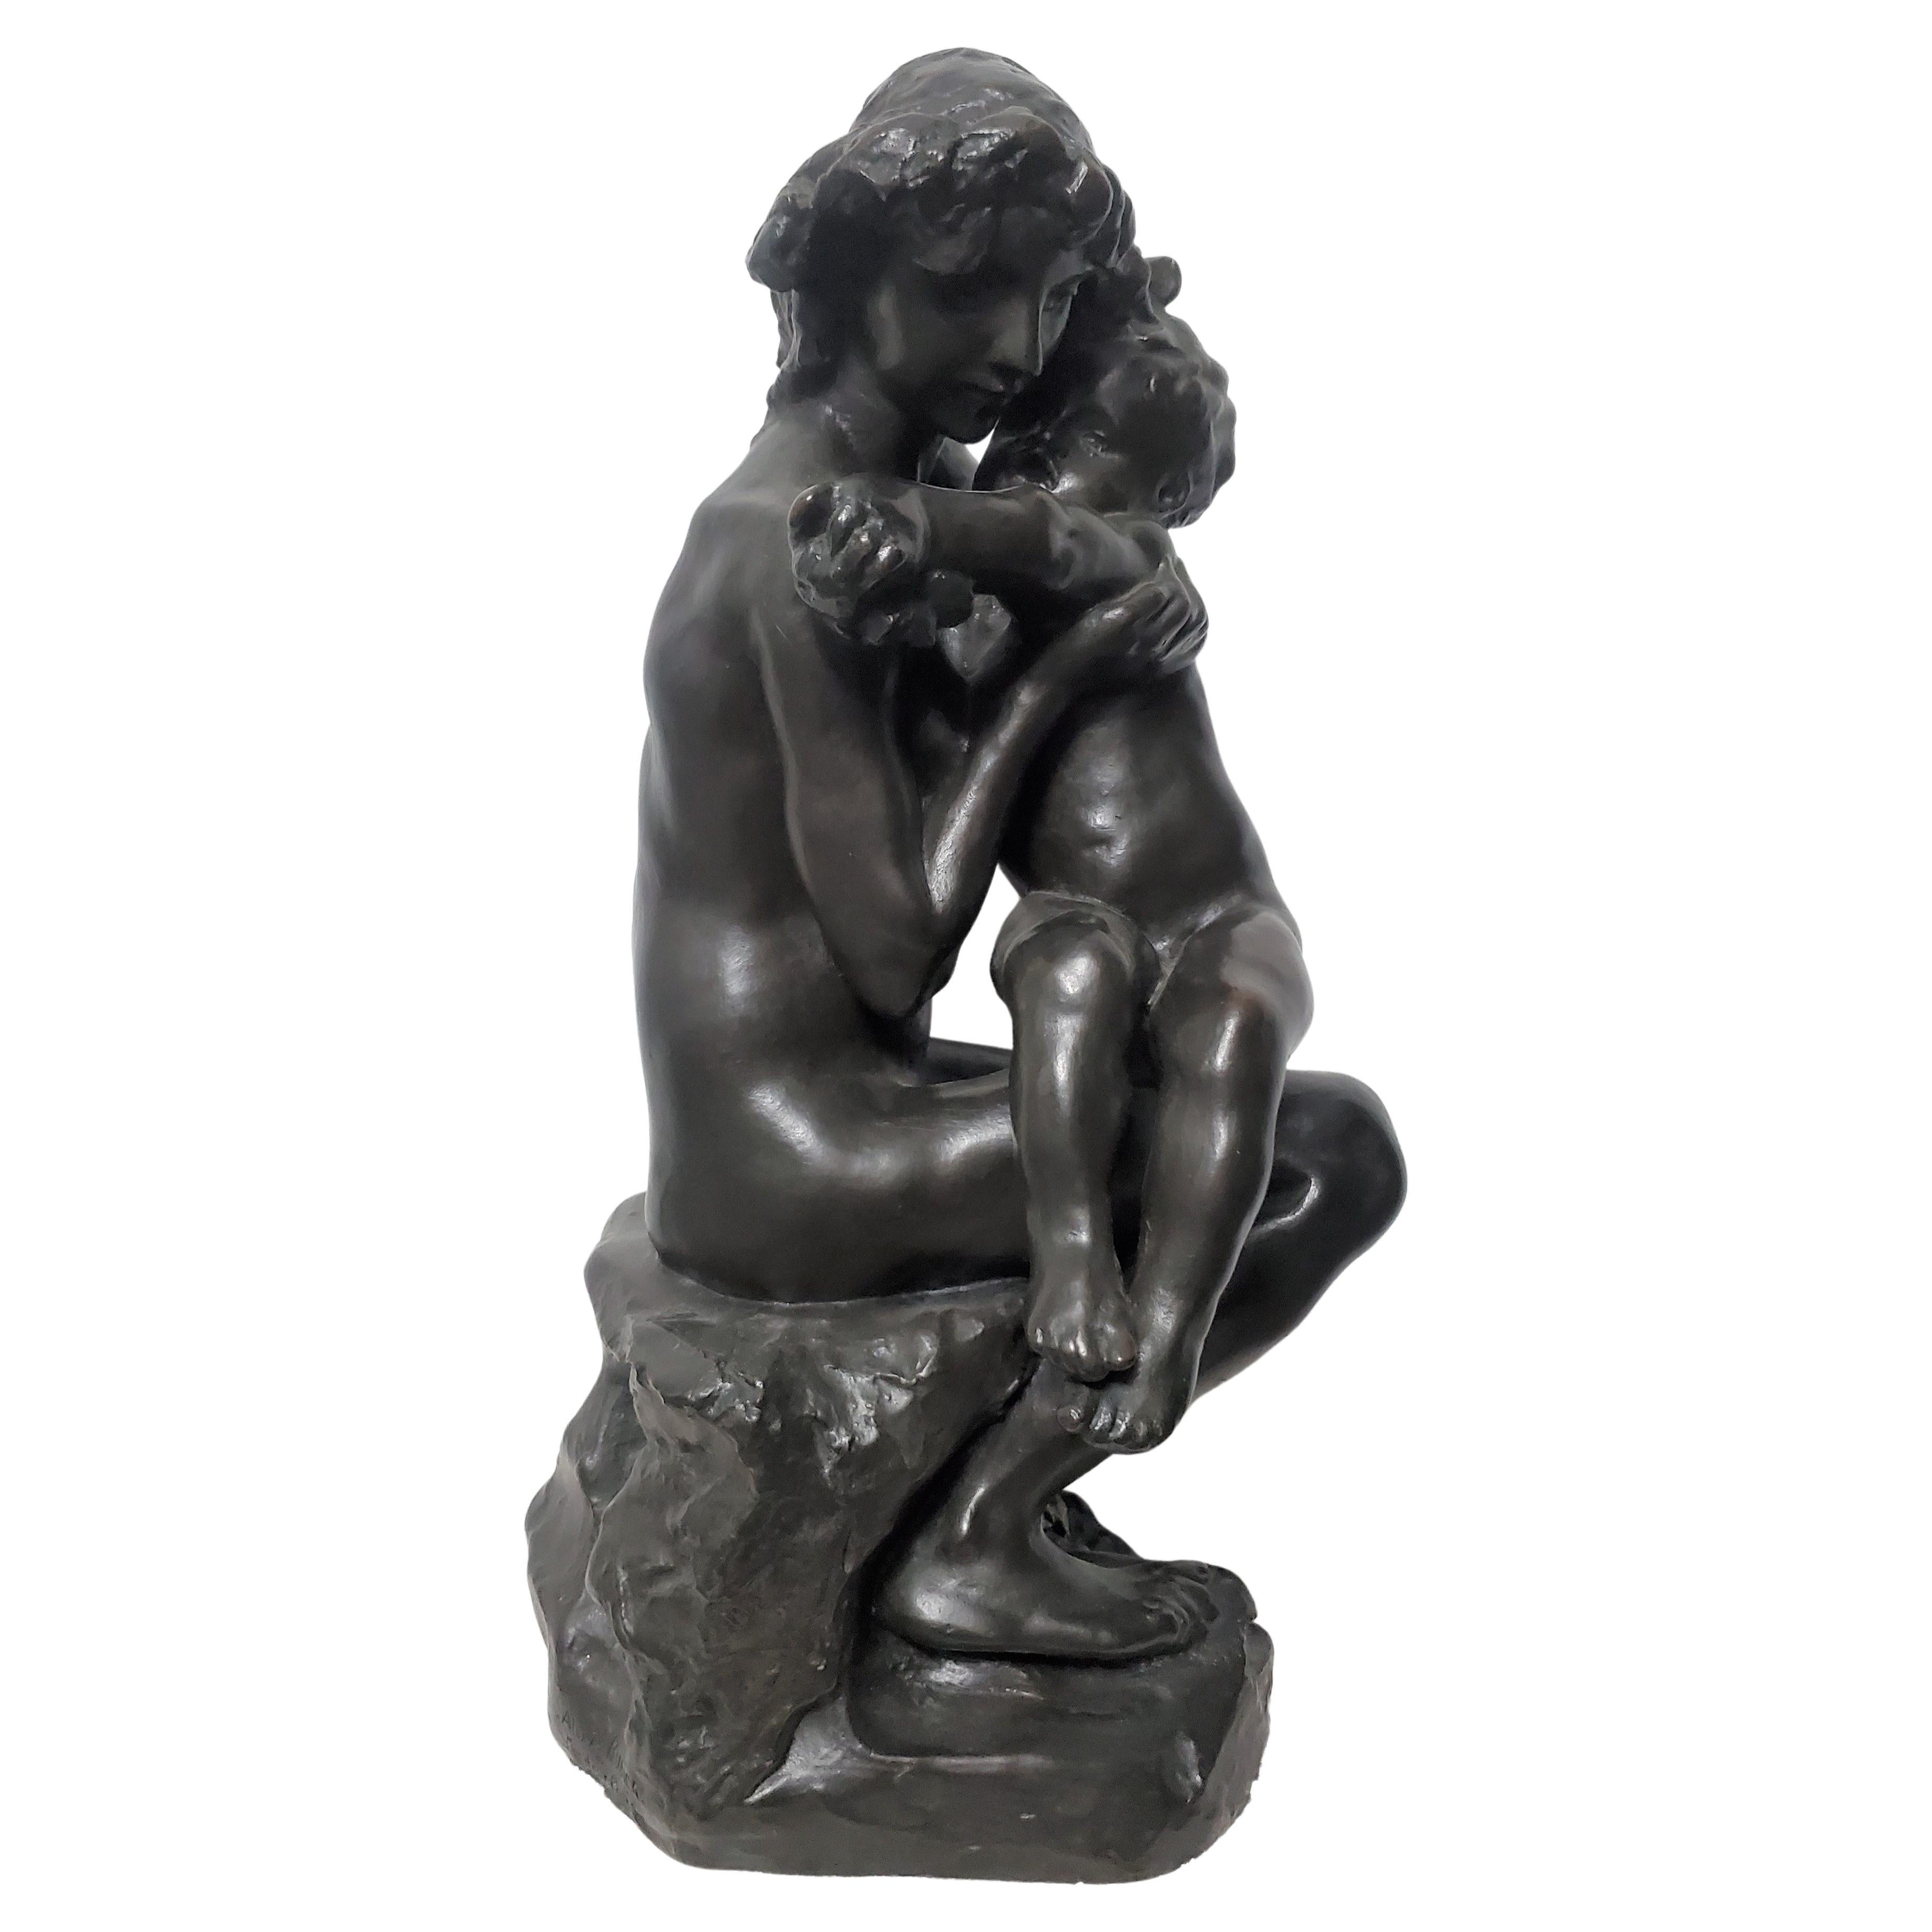 
Eine bedeutende Original-Bronzeskulptur von Bruder und Schwester - Frère et Soeur,
von A. Rodin (1840-1917)
signiert 